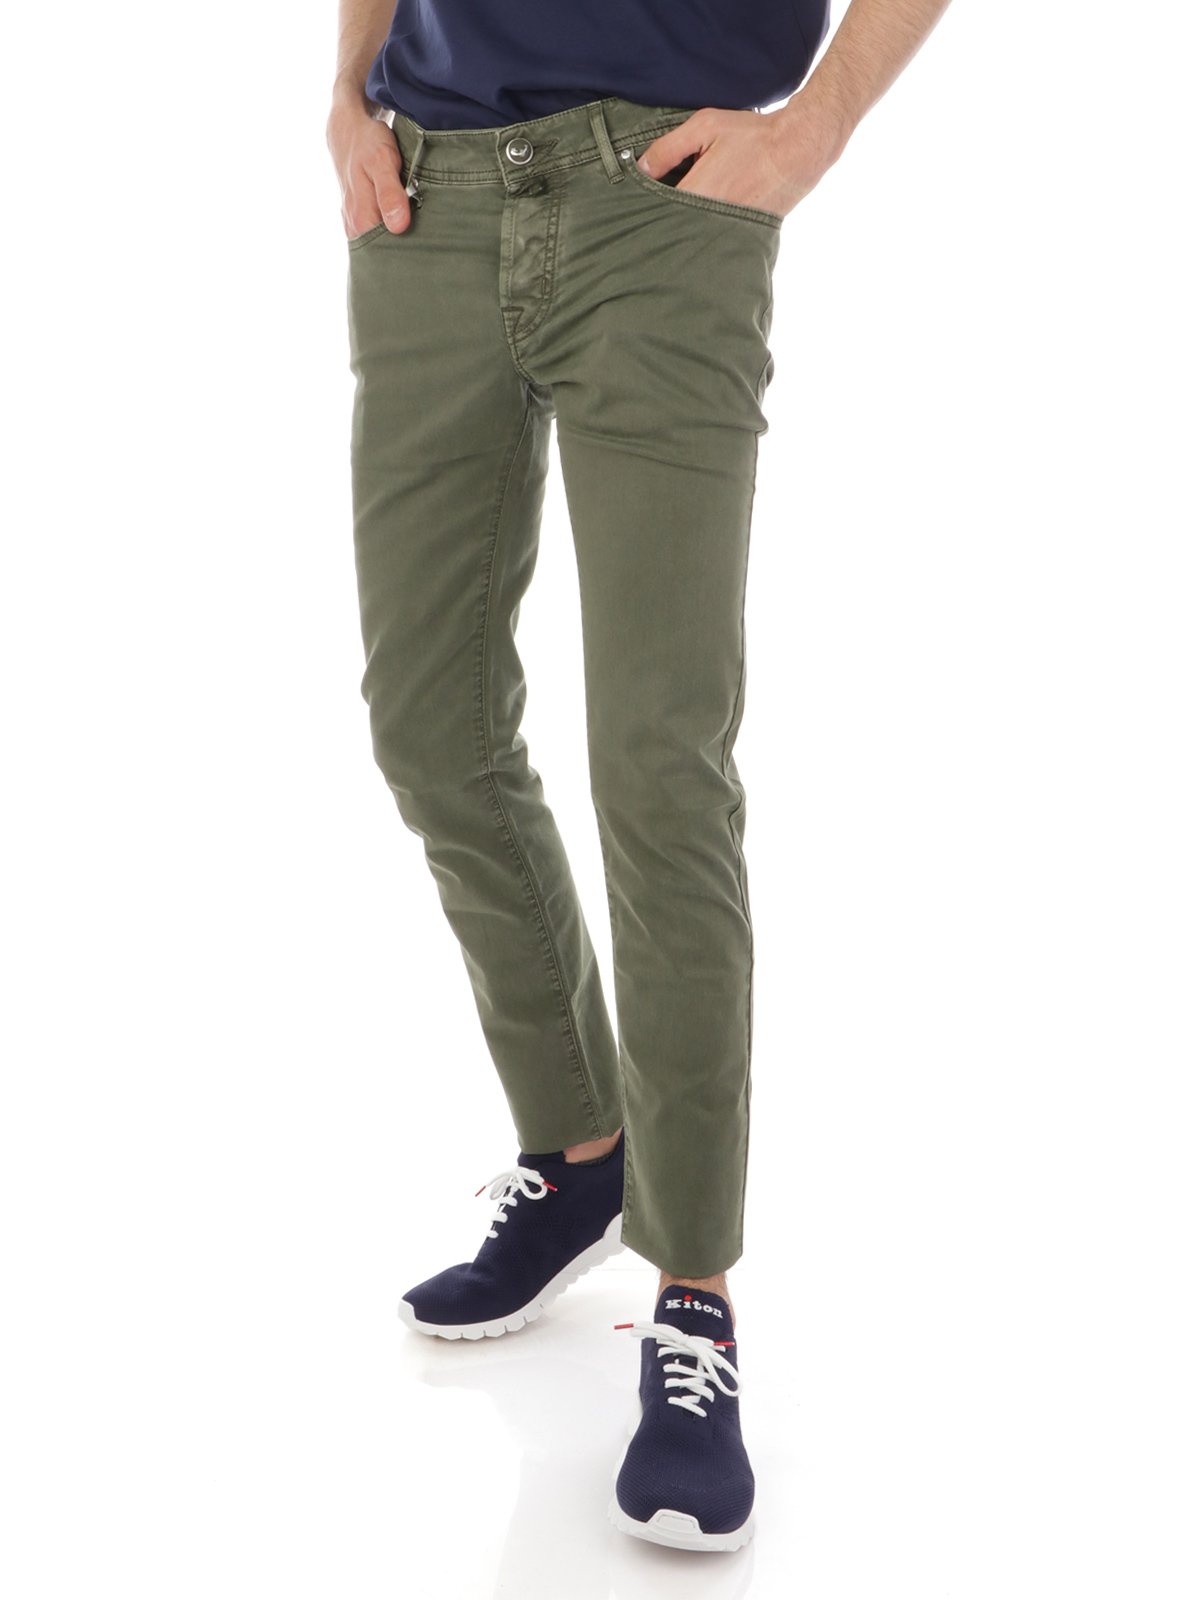 Abbigliamento Abbigliamento uomo Pantaloni Pantaloni Vintage in Verde 